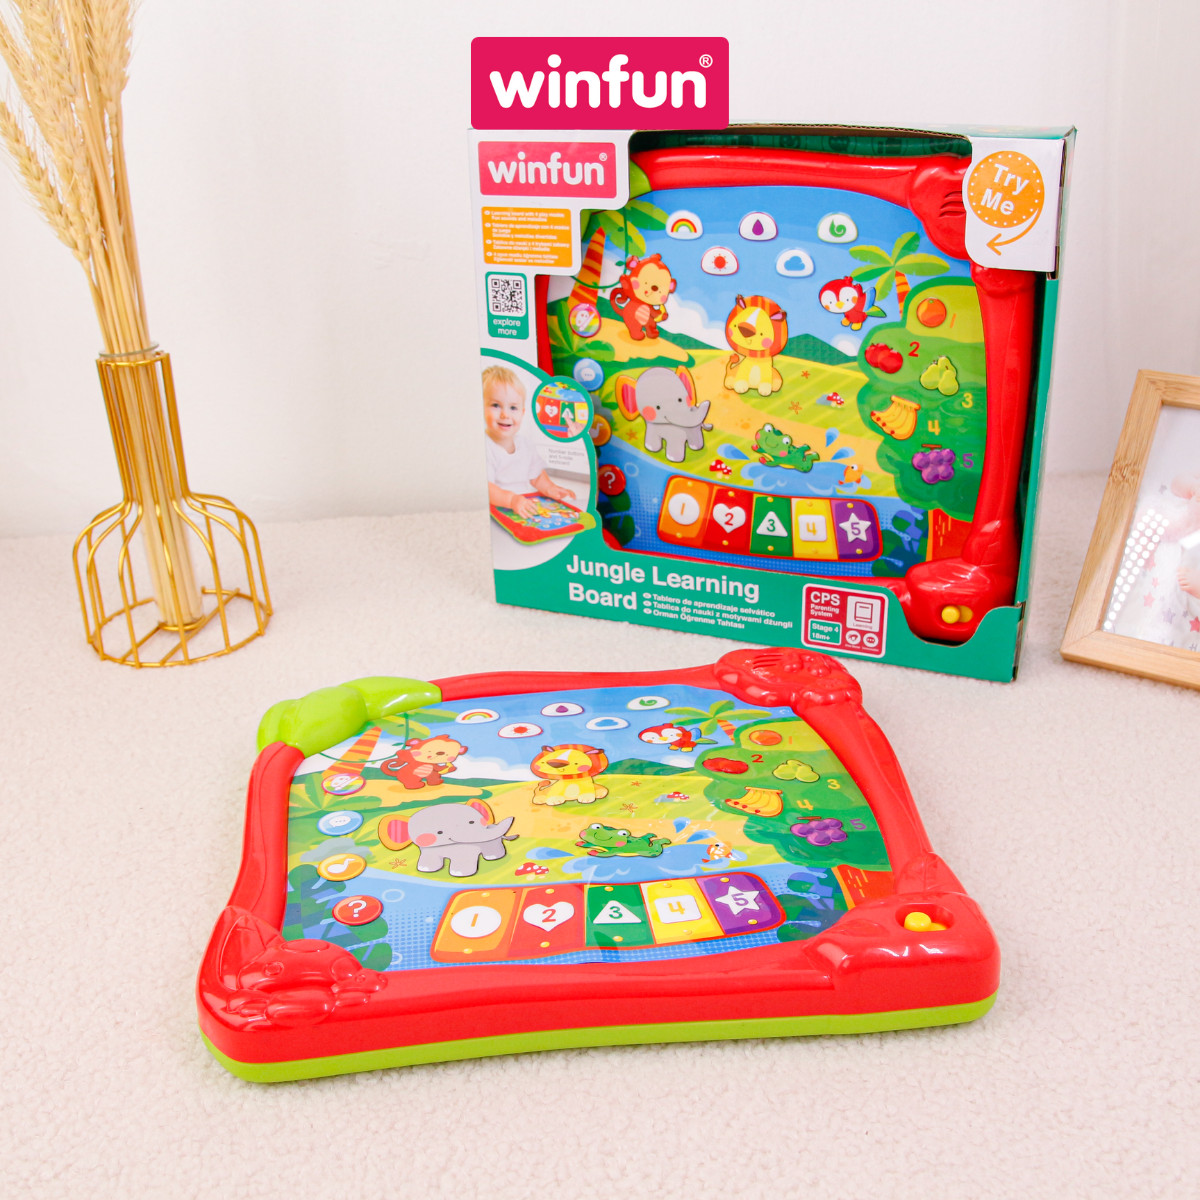 Bảng điện tử học số và con vật bằng tiếng Anh WINFUN 2513 - Đồ chơi giáo dục sớm phát triển ngôn ngữ cho trẻ